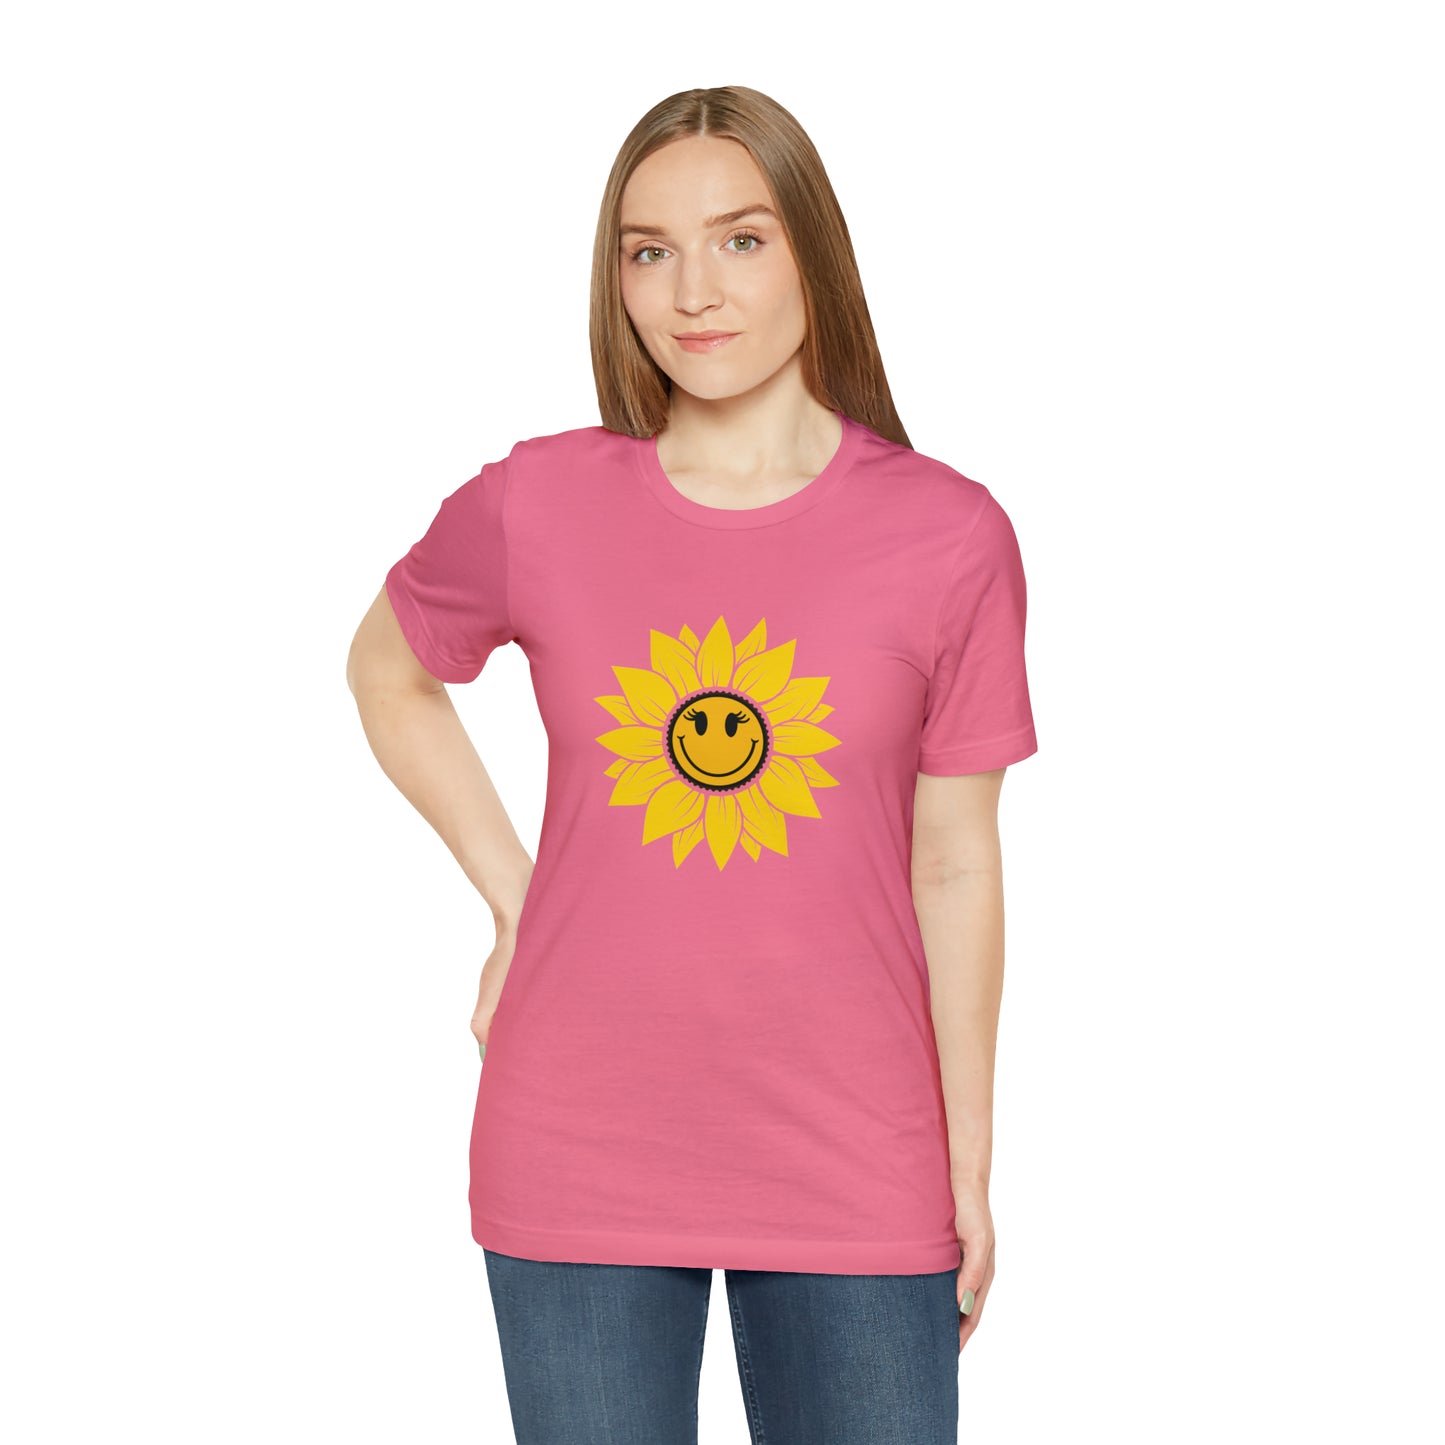 Positive, Sunflower, Nature, Gardens, Flowers, Garden- Adult, Regular Fit, Soft Cotton, T-shirt